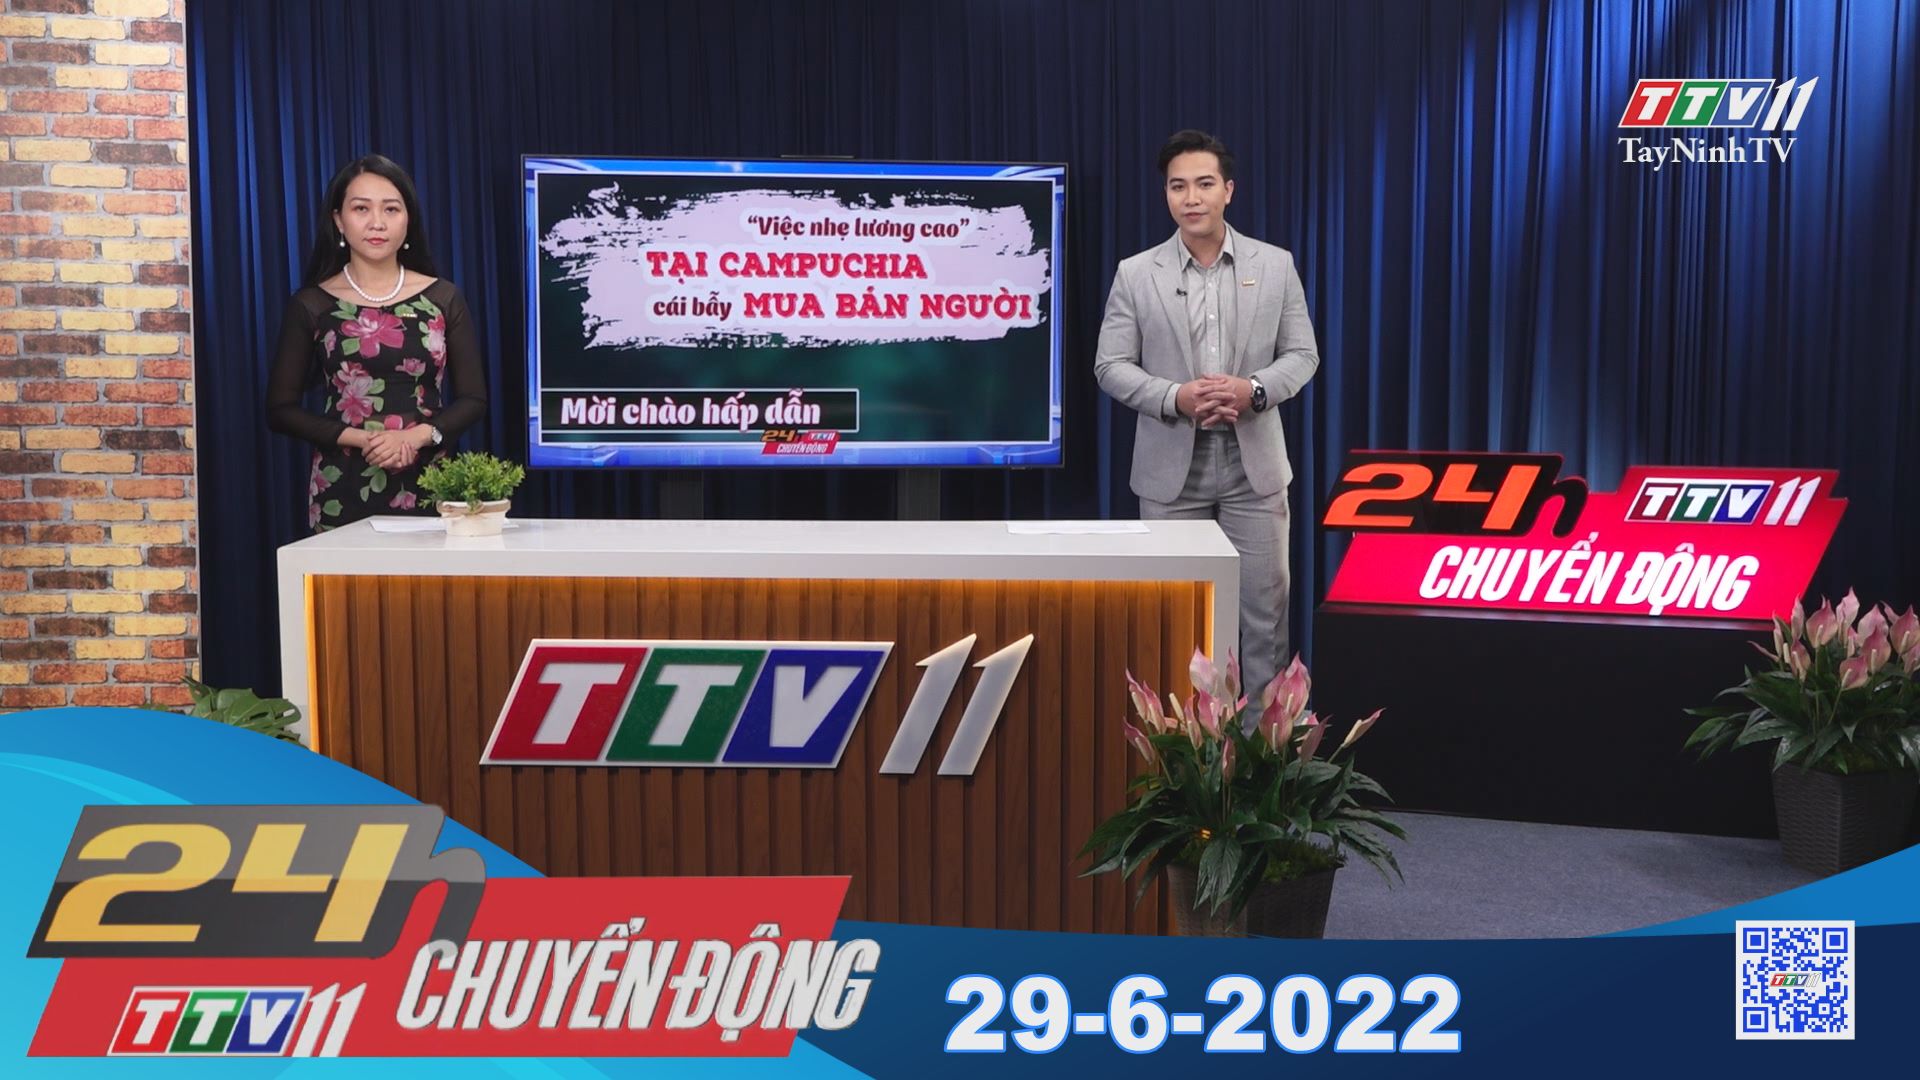 24h Chuyển động 29-6-2022 | Tin tức hôm nay | TayNinhTV